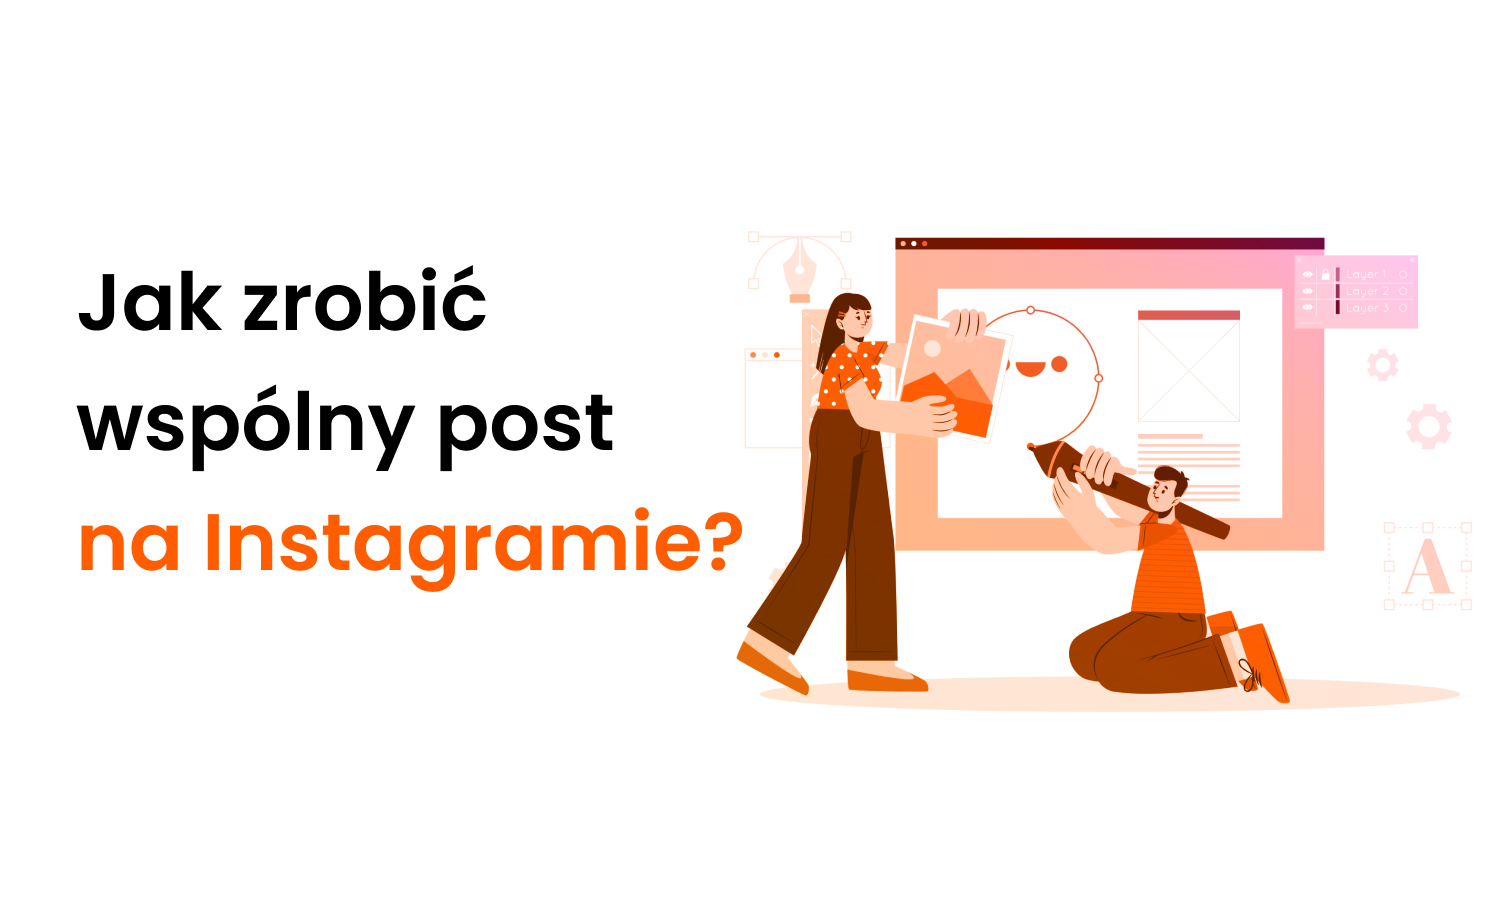 Jak zrobić wspólny post na Instagramie?